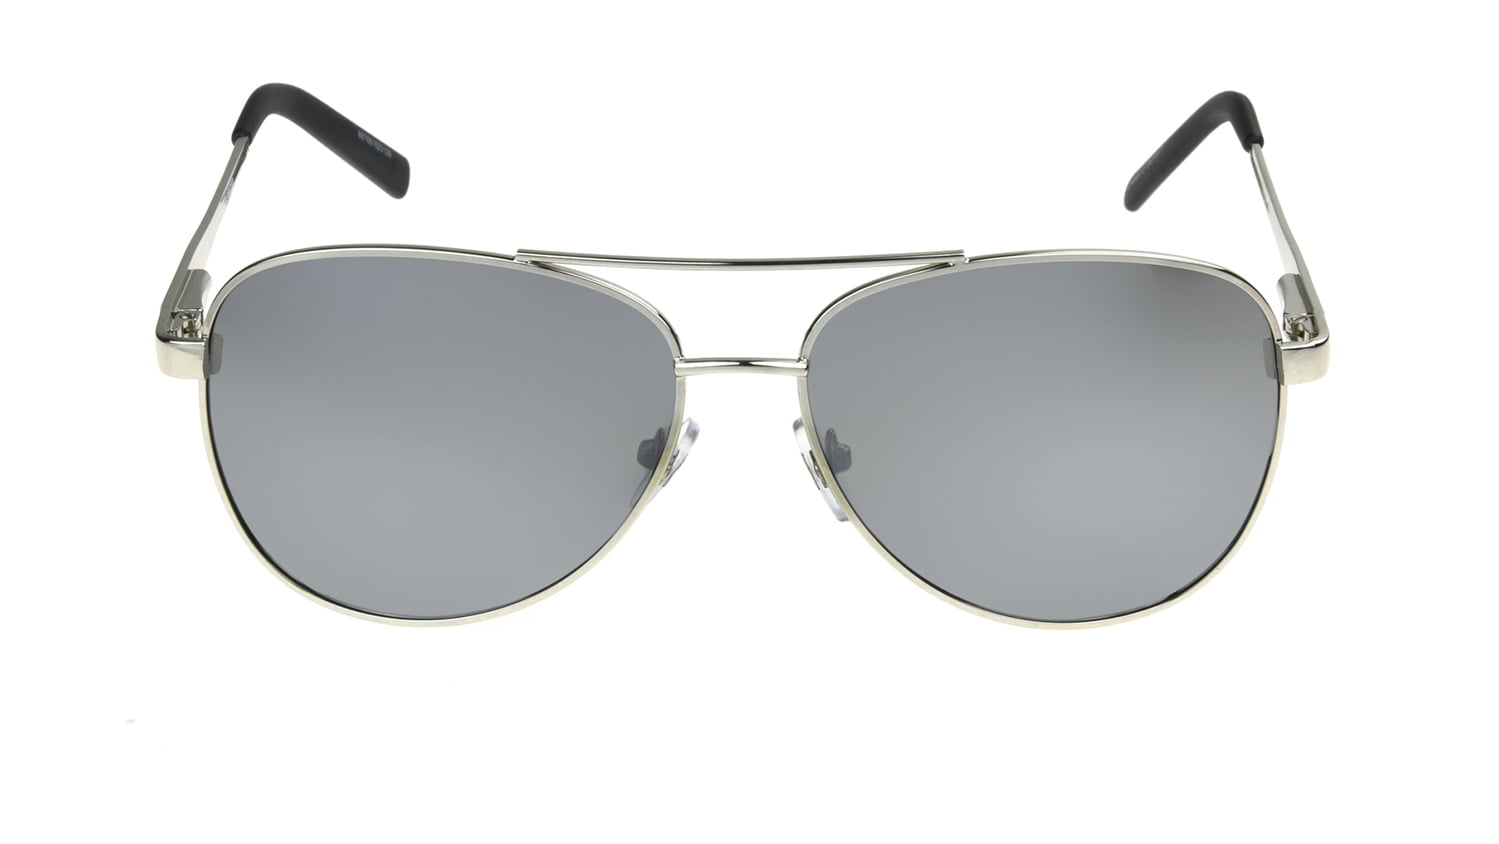 reebok aviator sunglasses for men